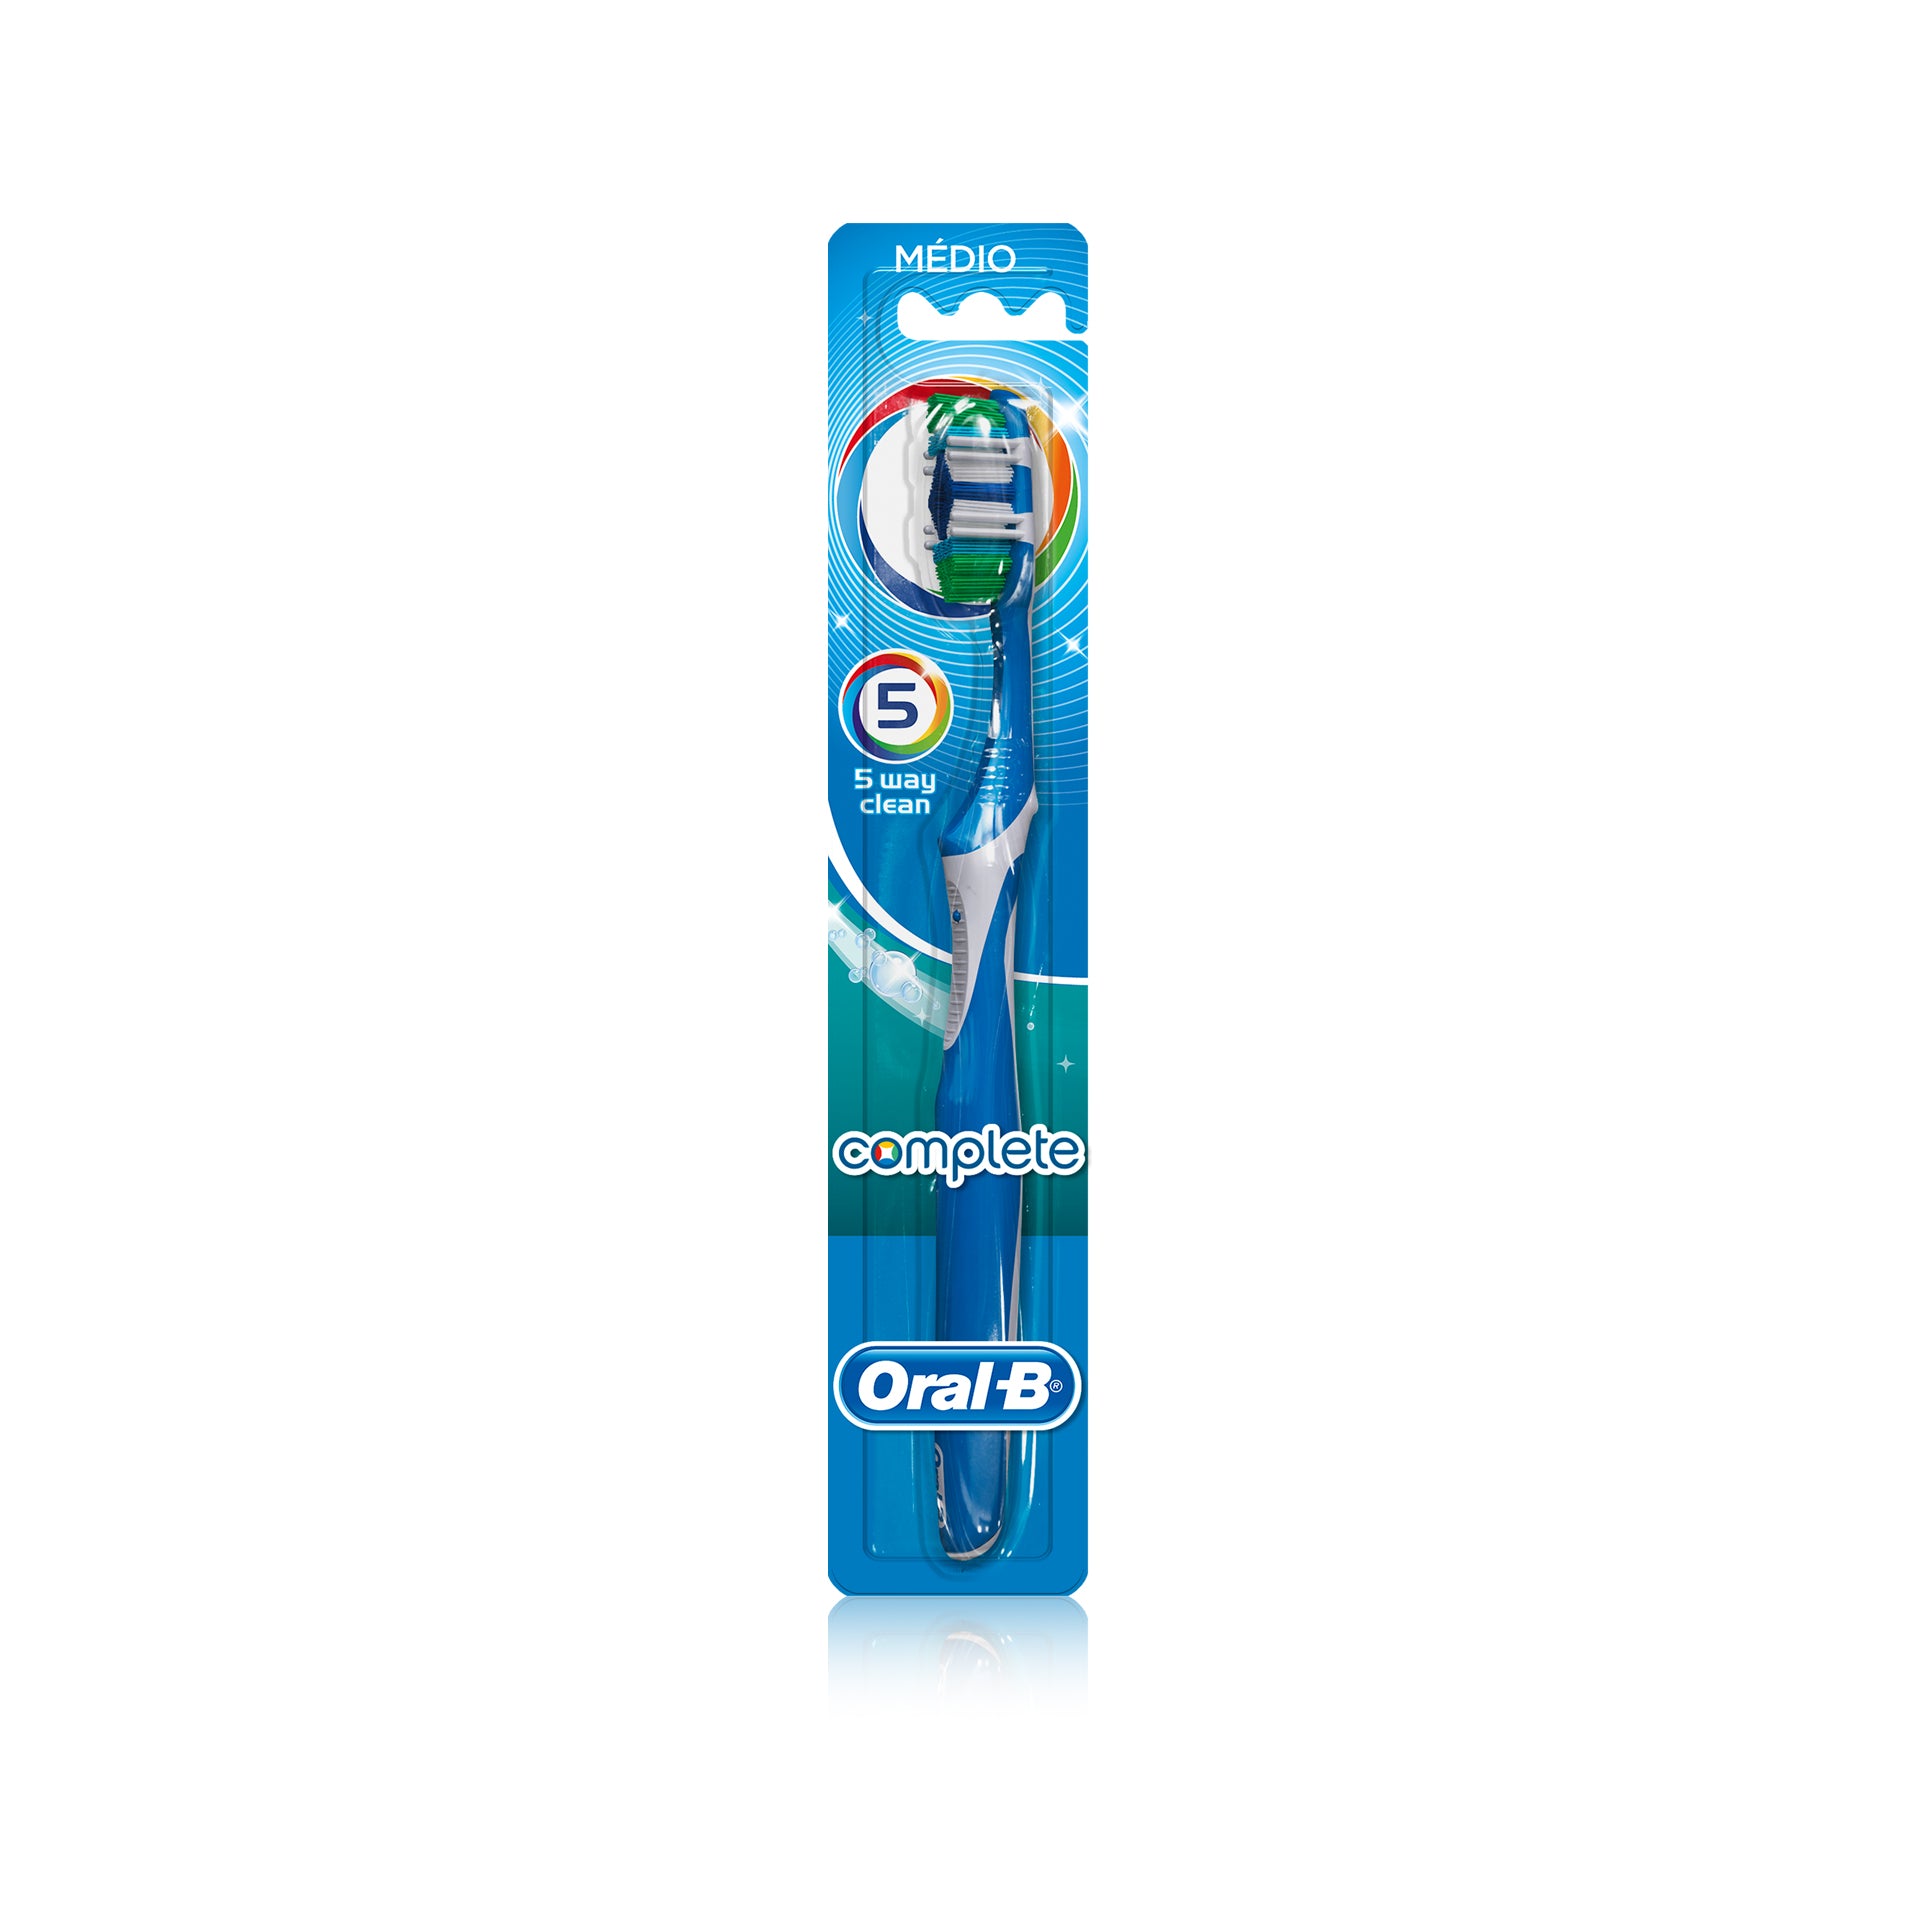 Oral-B Cepillo Dental Completo 5Way Clean 1ud